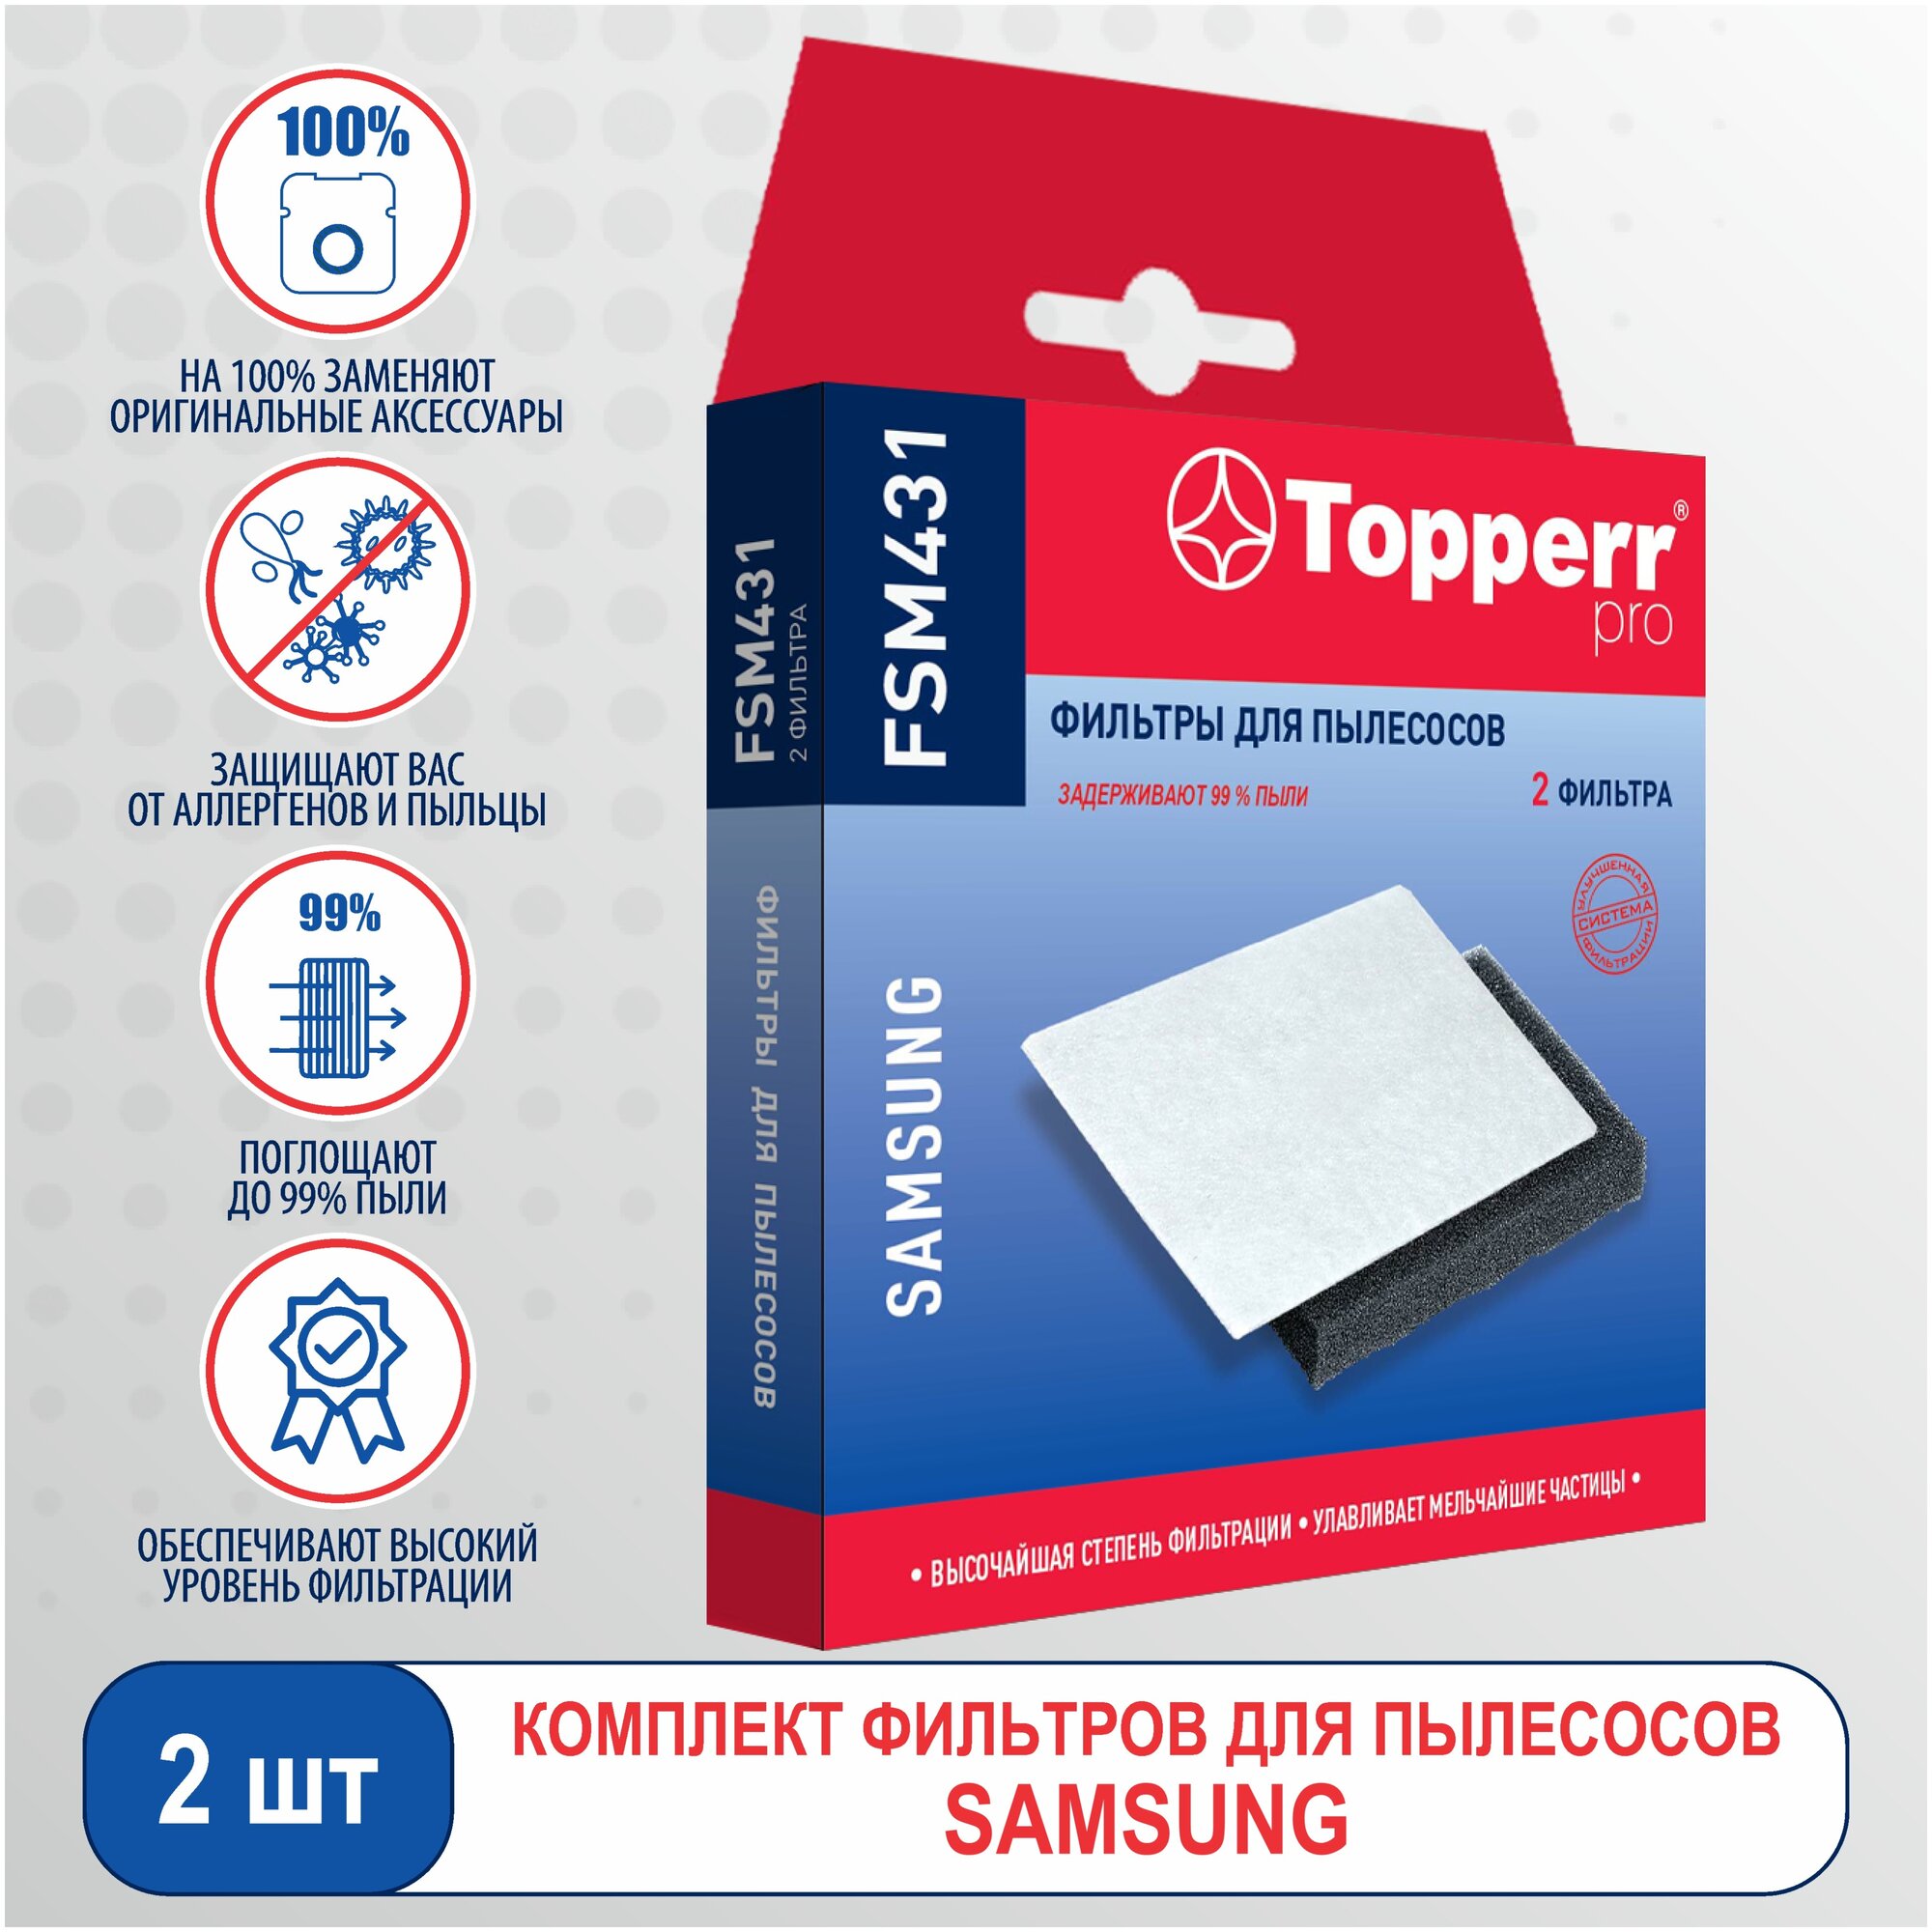 Фильтр (TOPPERR FSM 431 для пылесосов Комплект фильтров (Губчатый фильтр+микрофильтр) для пылесосов Samsung)